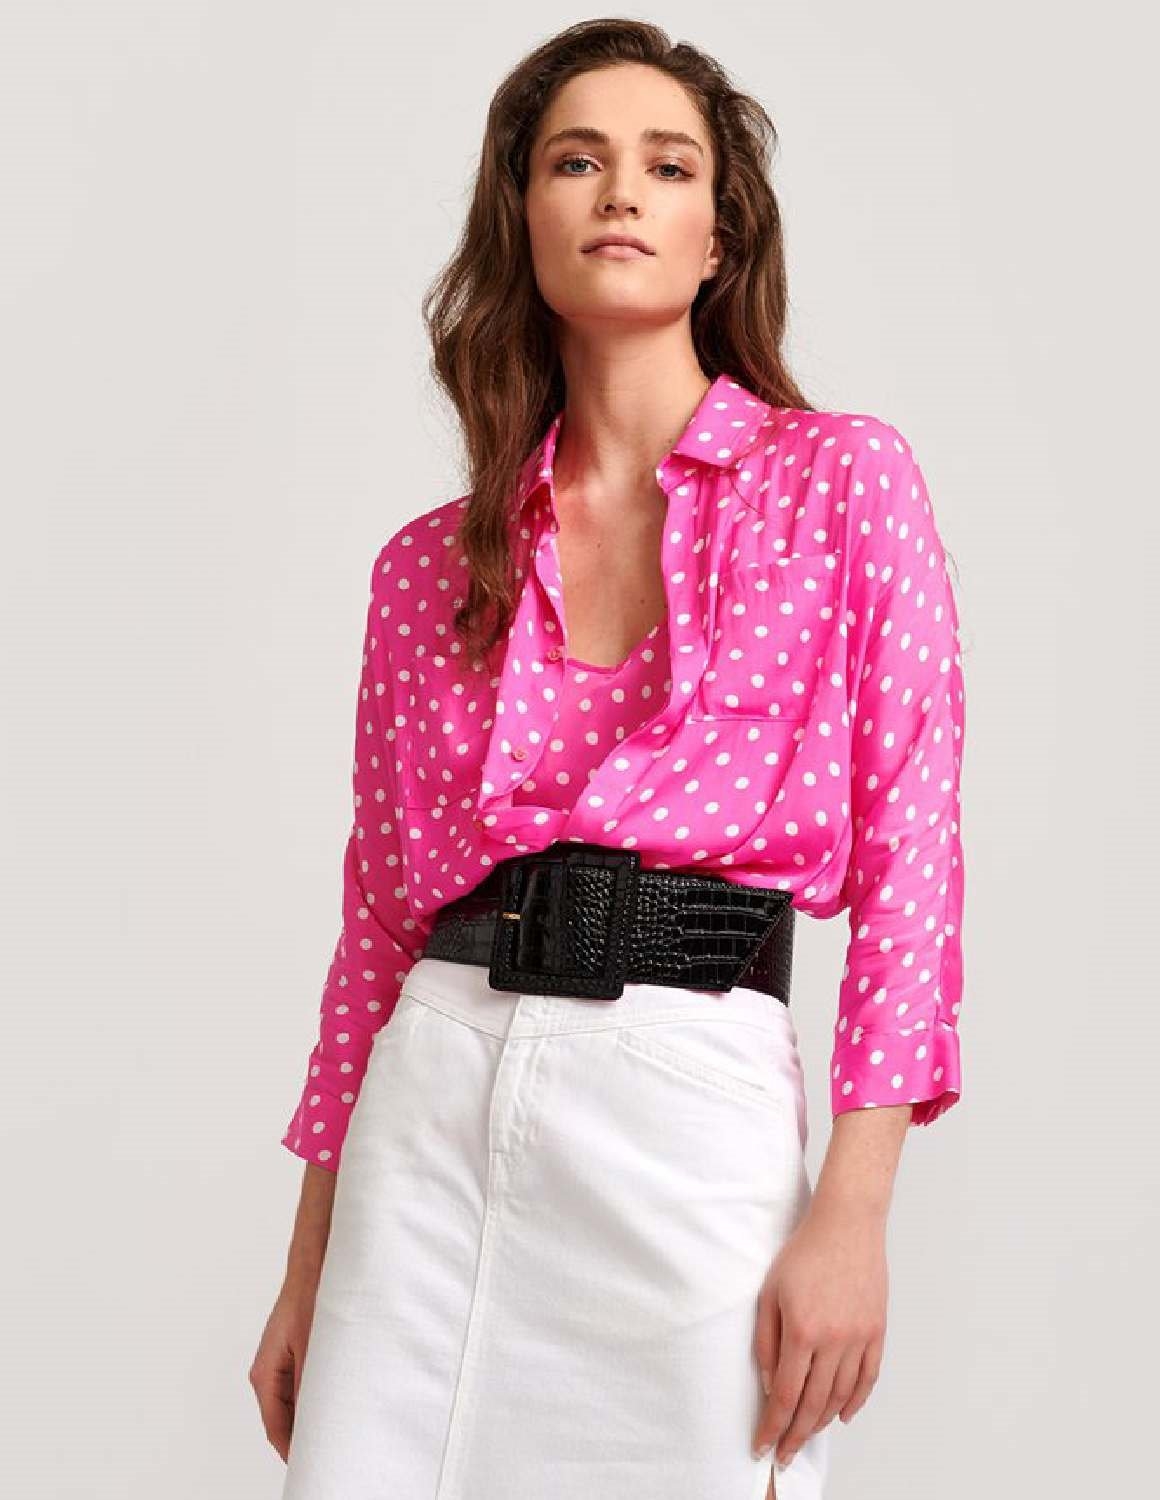 Essentiel Antwerp Viral shirt - neon pink / off-white polka dot ...